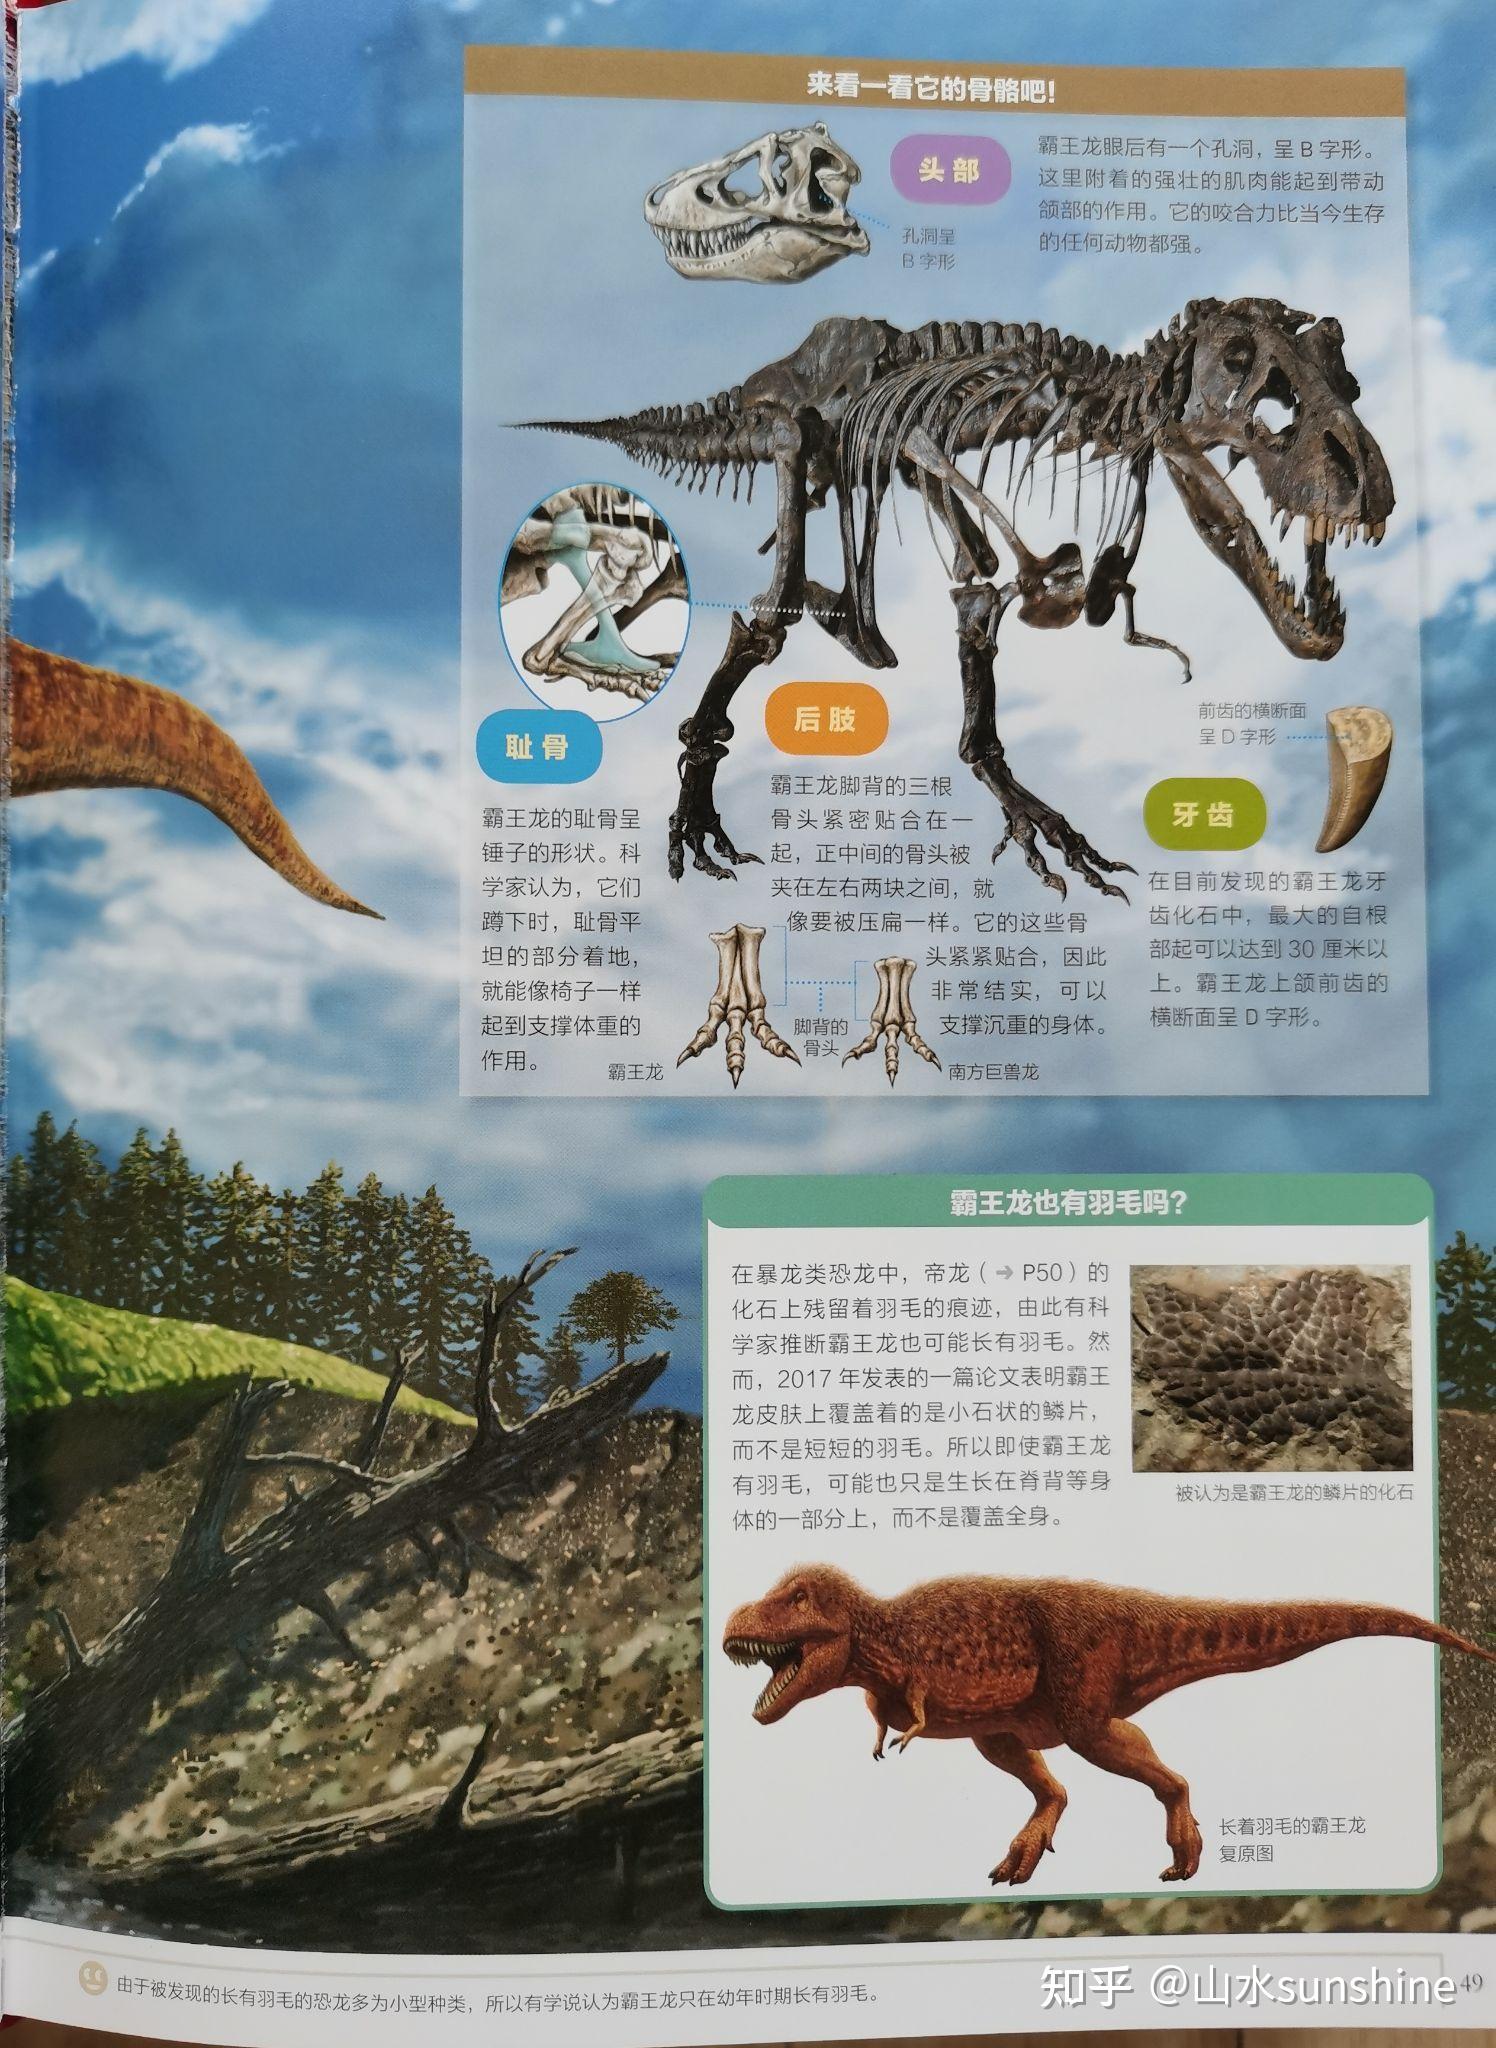 令孩子痴迷的科普书《小学馆大百科:恐龙》 